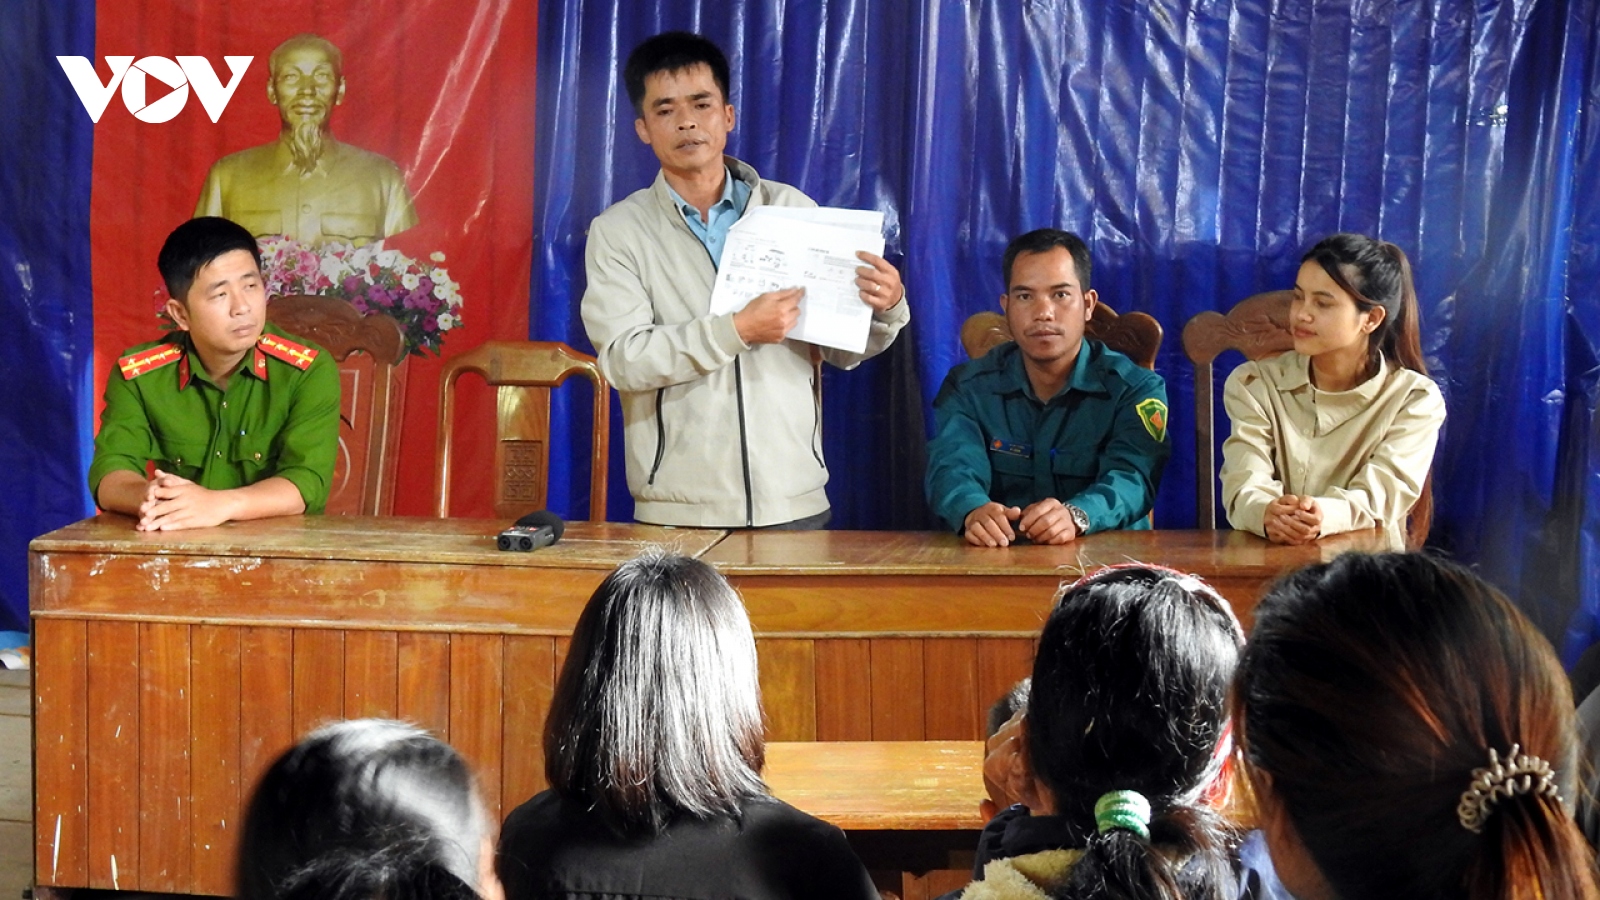 Động đất ở Kon Tum: Chính quyền và người dân chủ động, tránh gây hoang mang